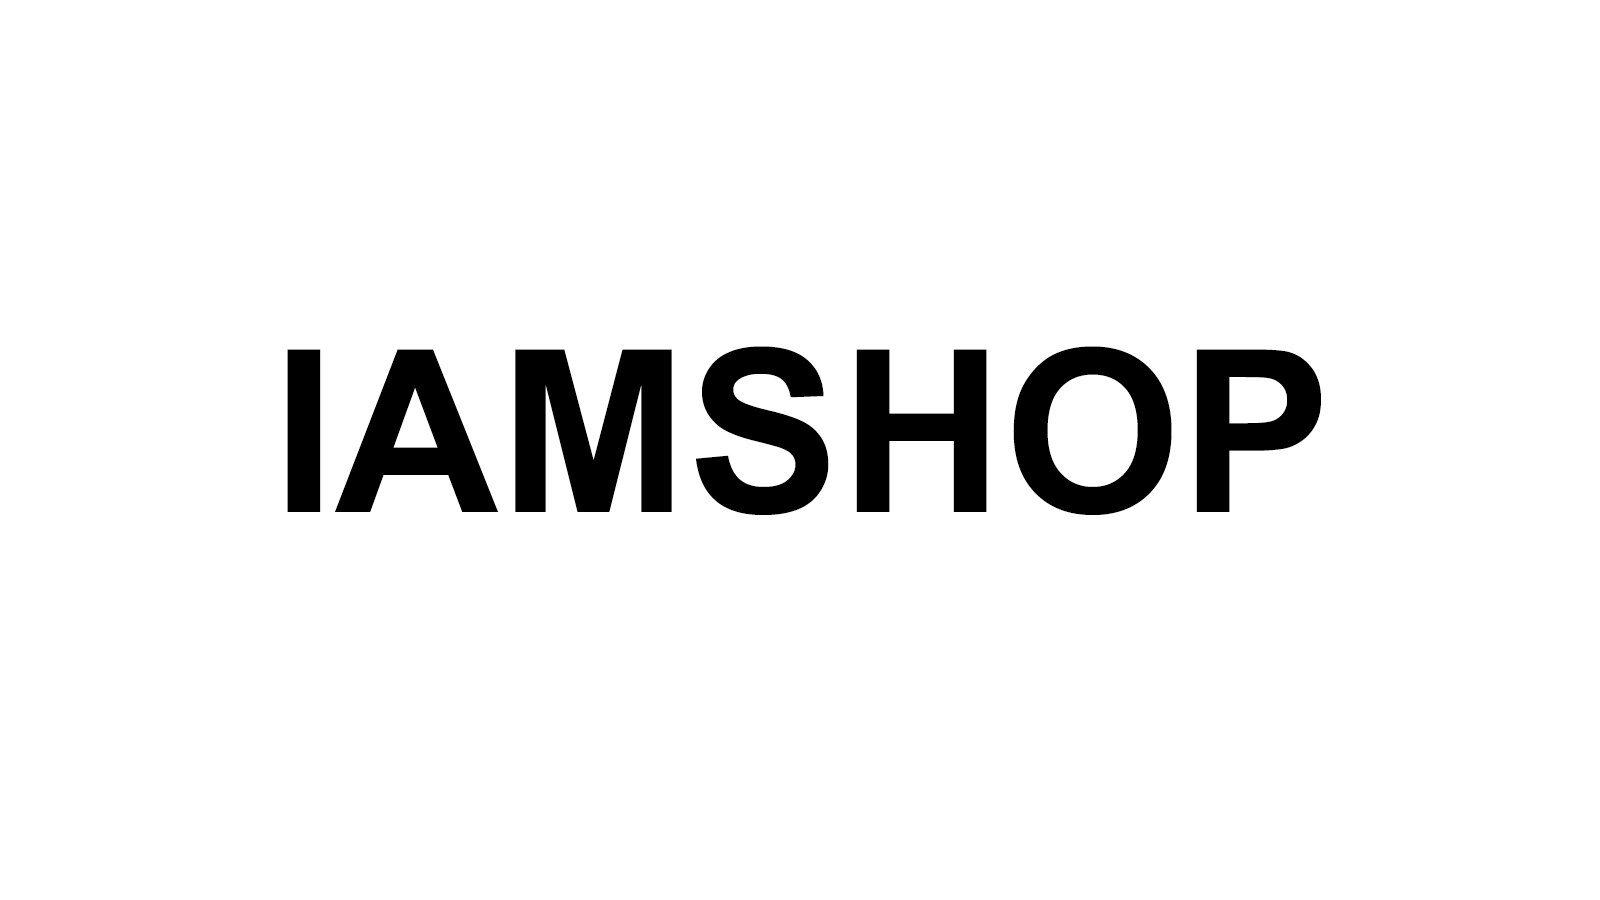 IAMSHOP-Resized.jpg